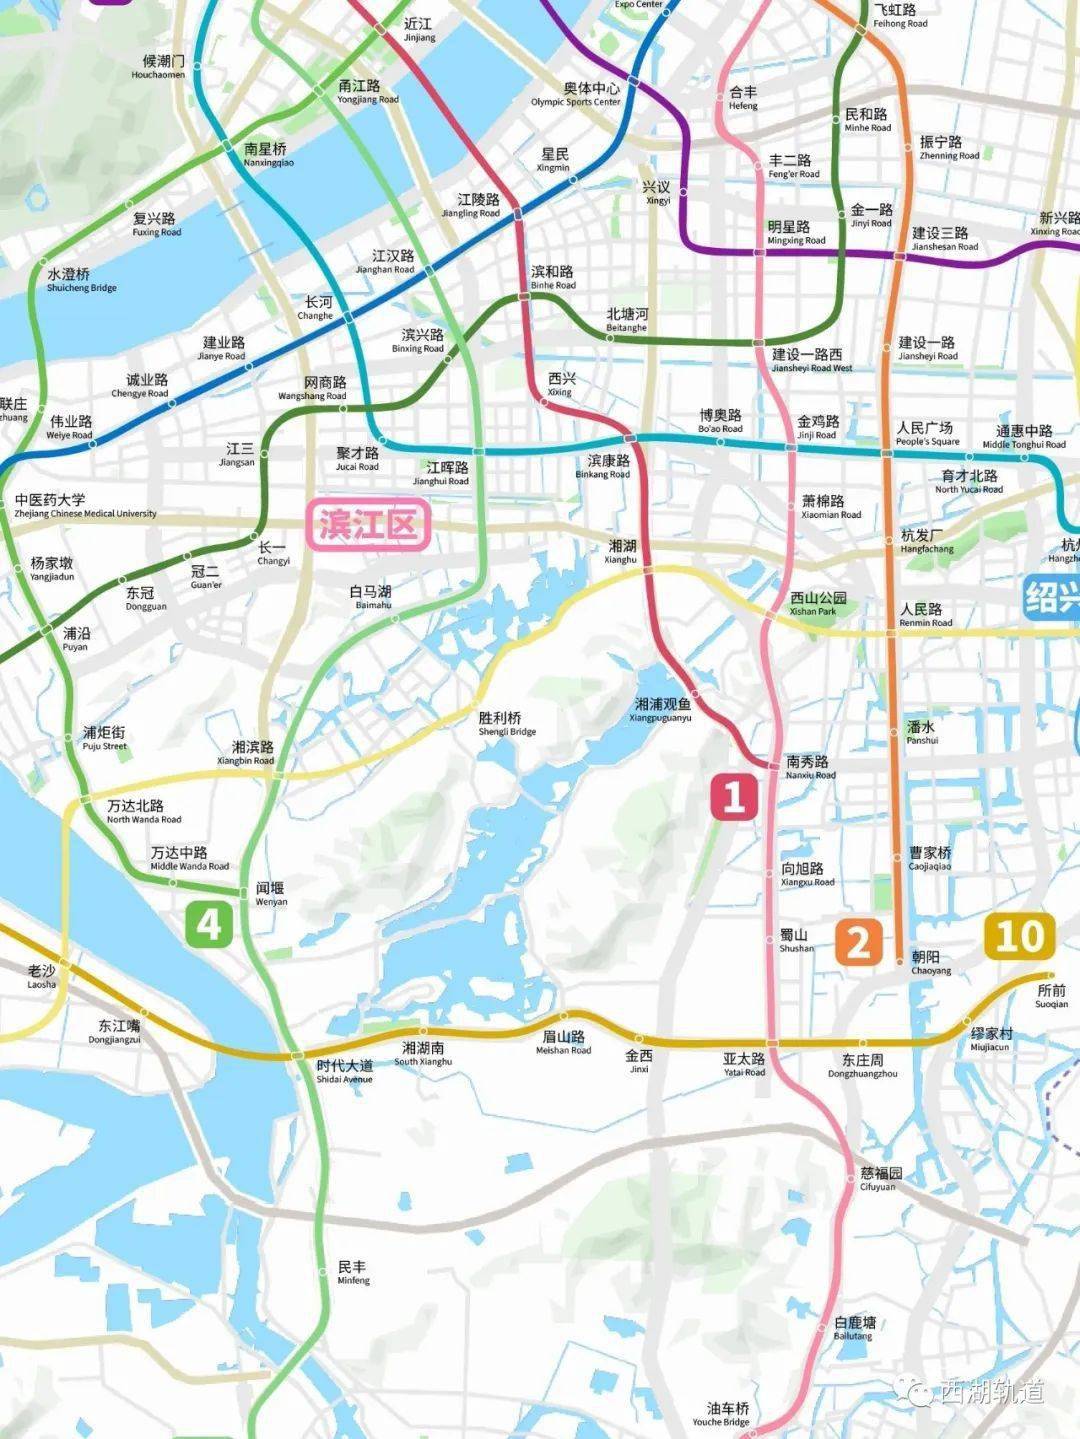 杭州地铁2035年规划线路图(网友最新版)